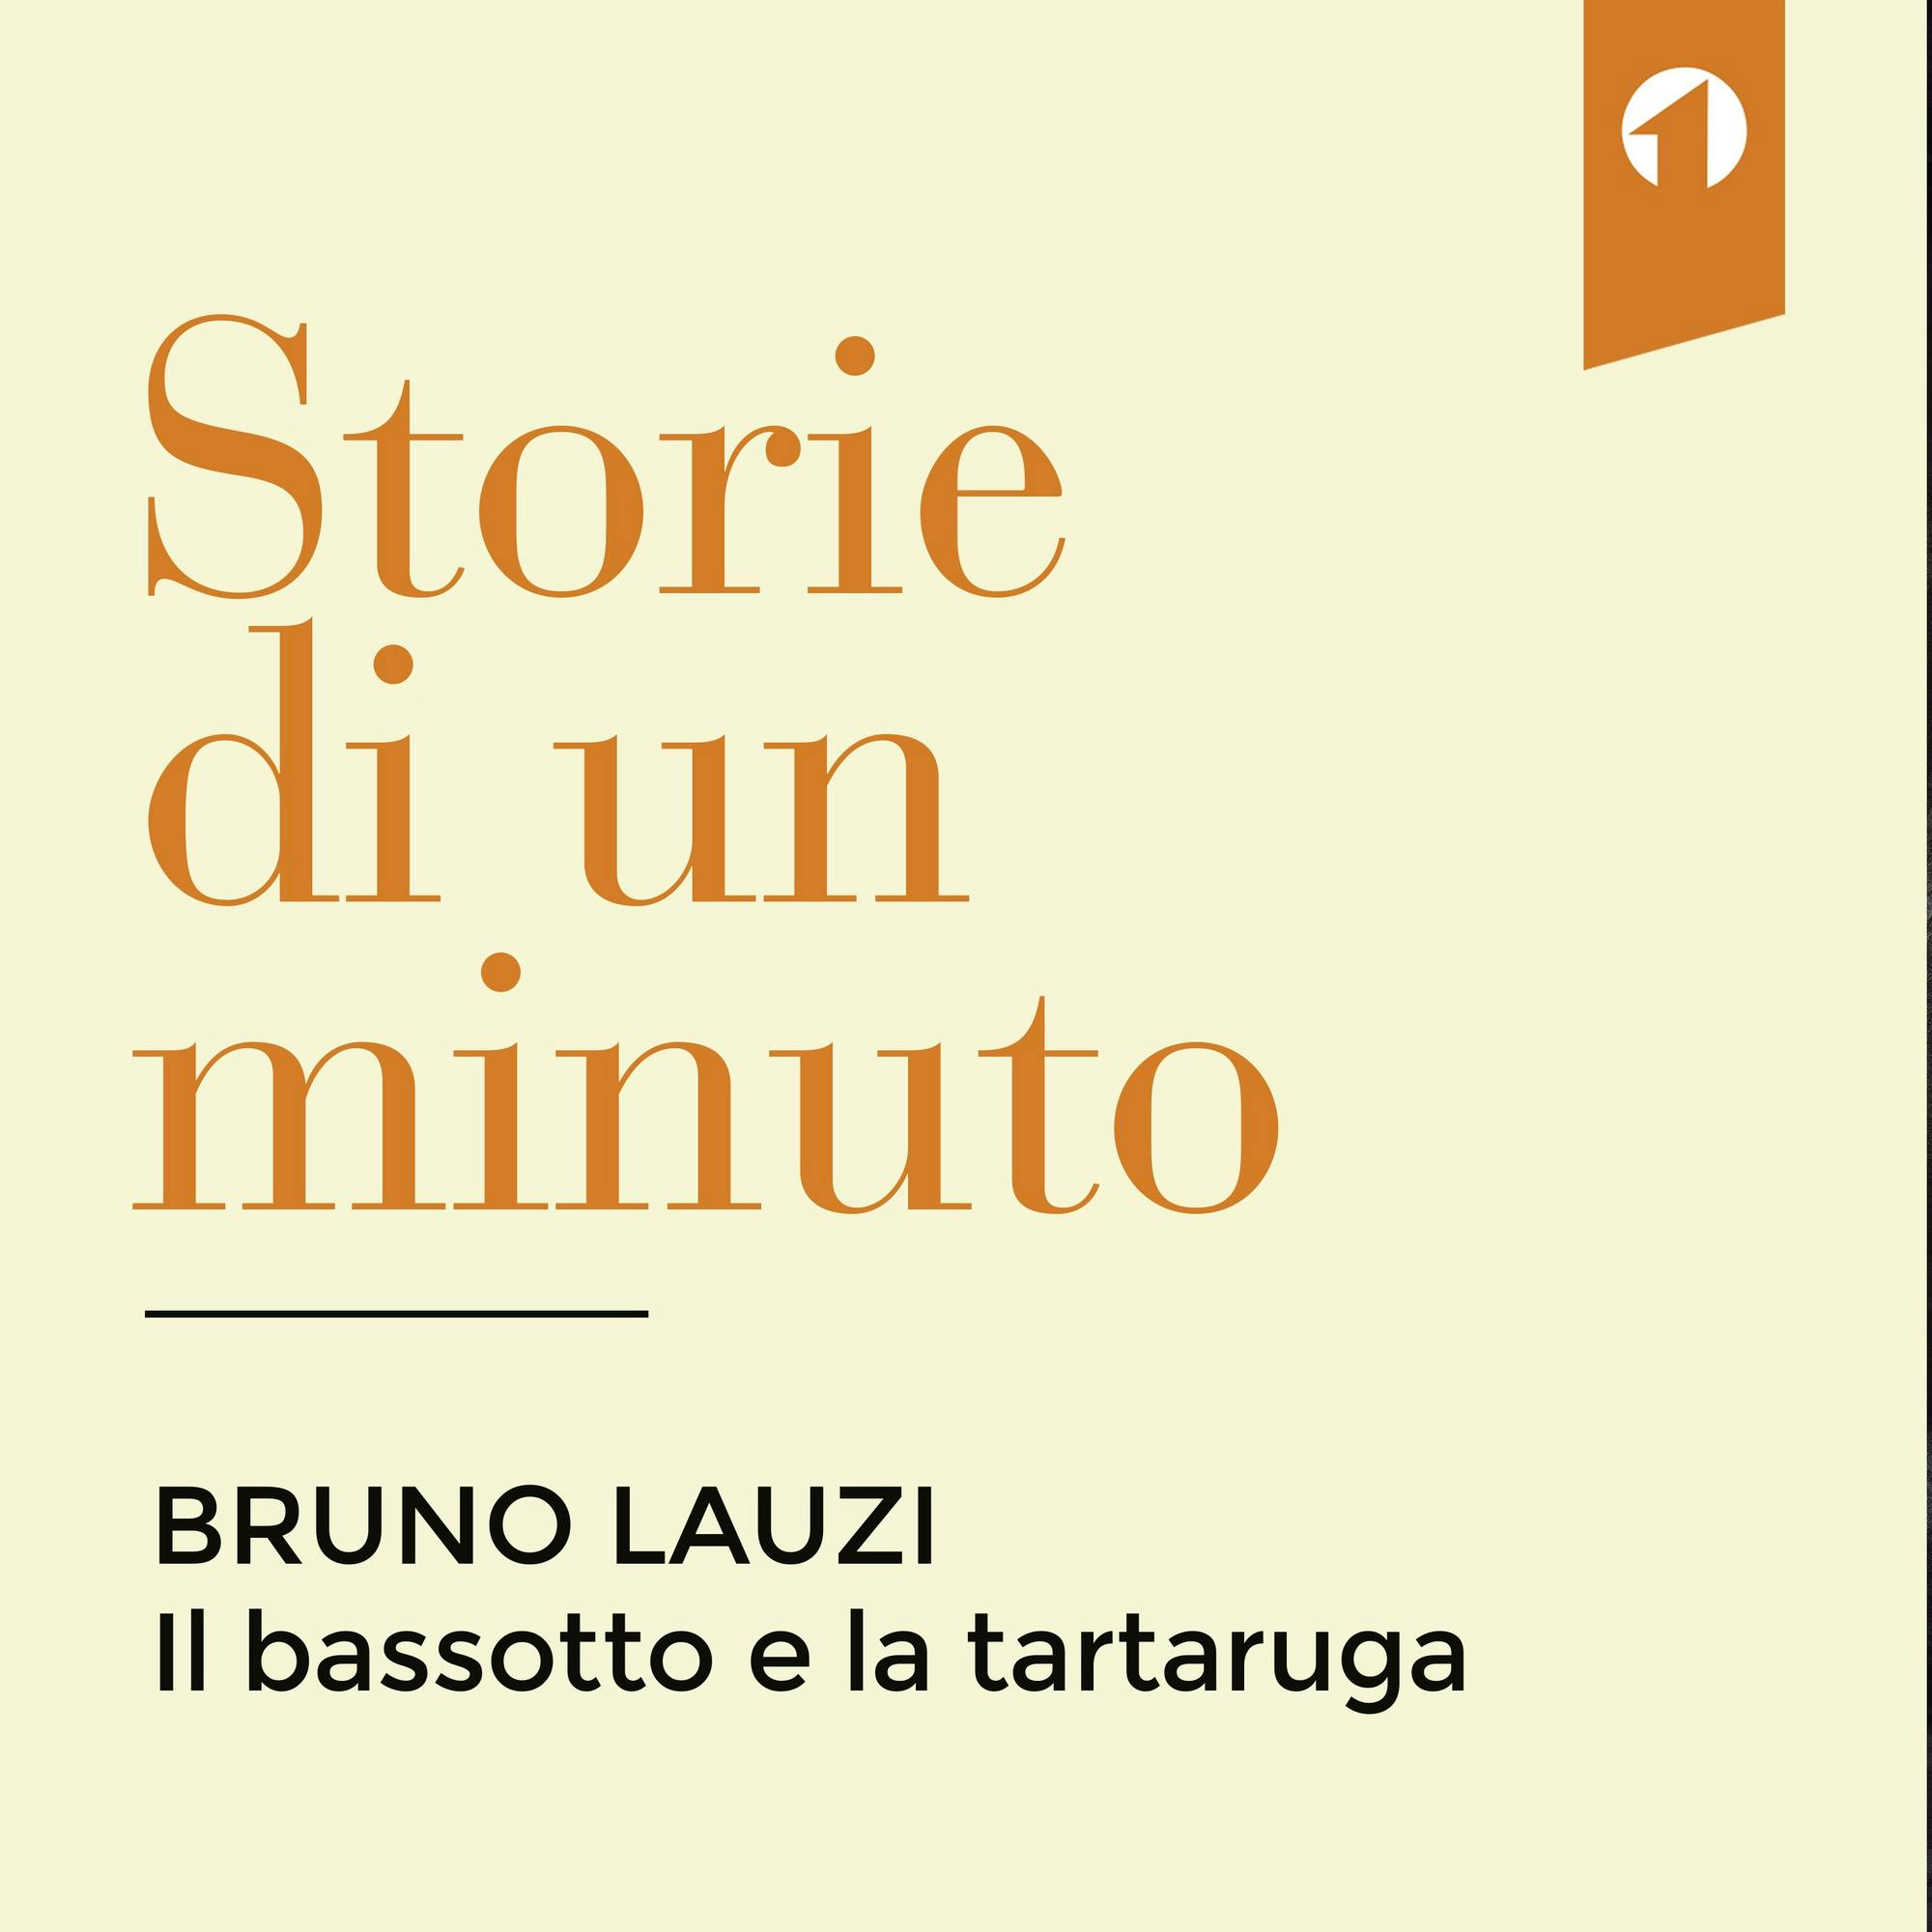 Bruno Lauzi, il bassotto e la tartaruga